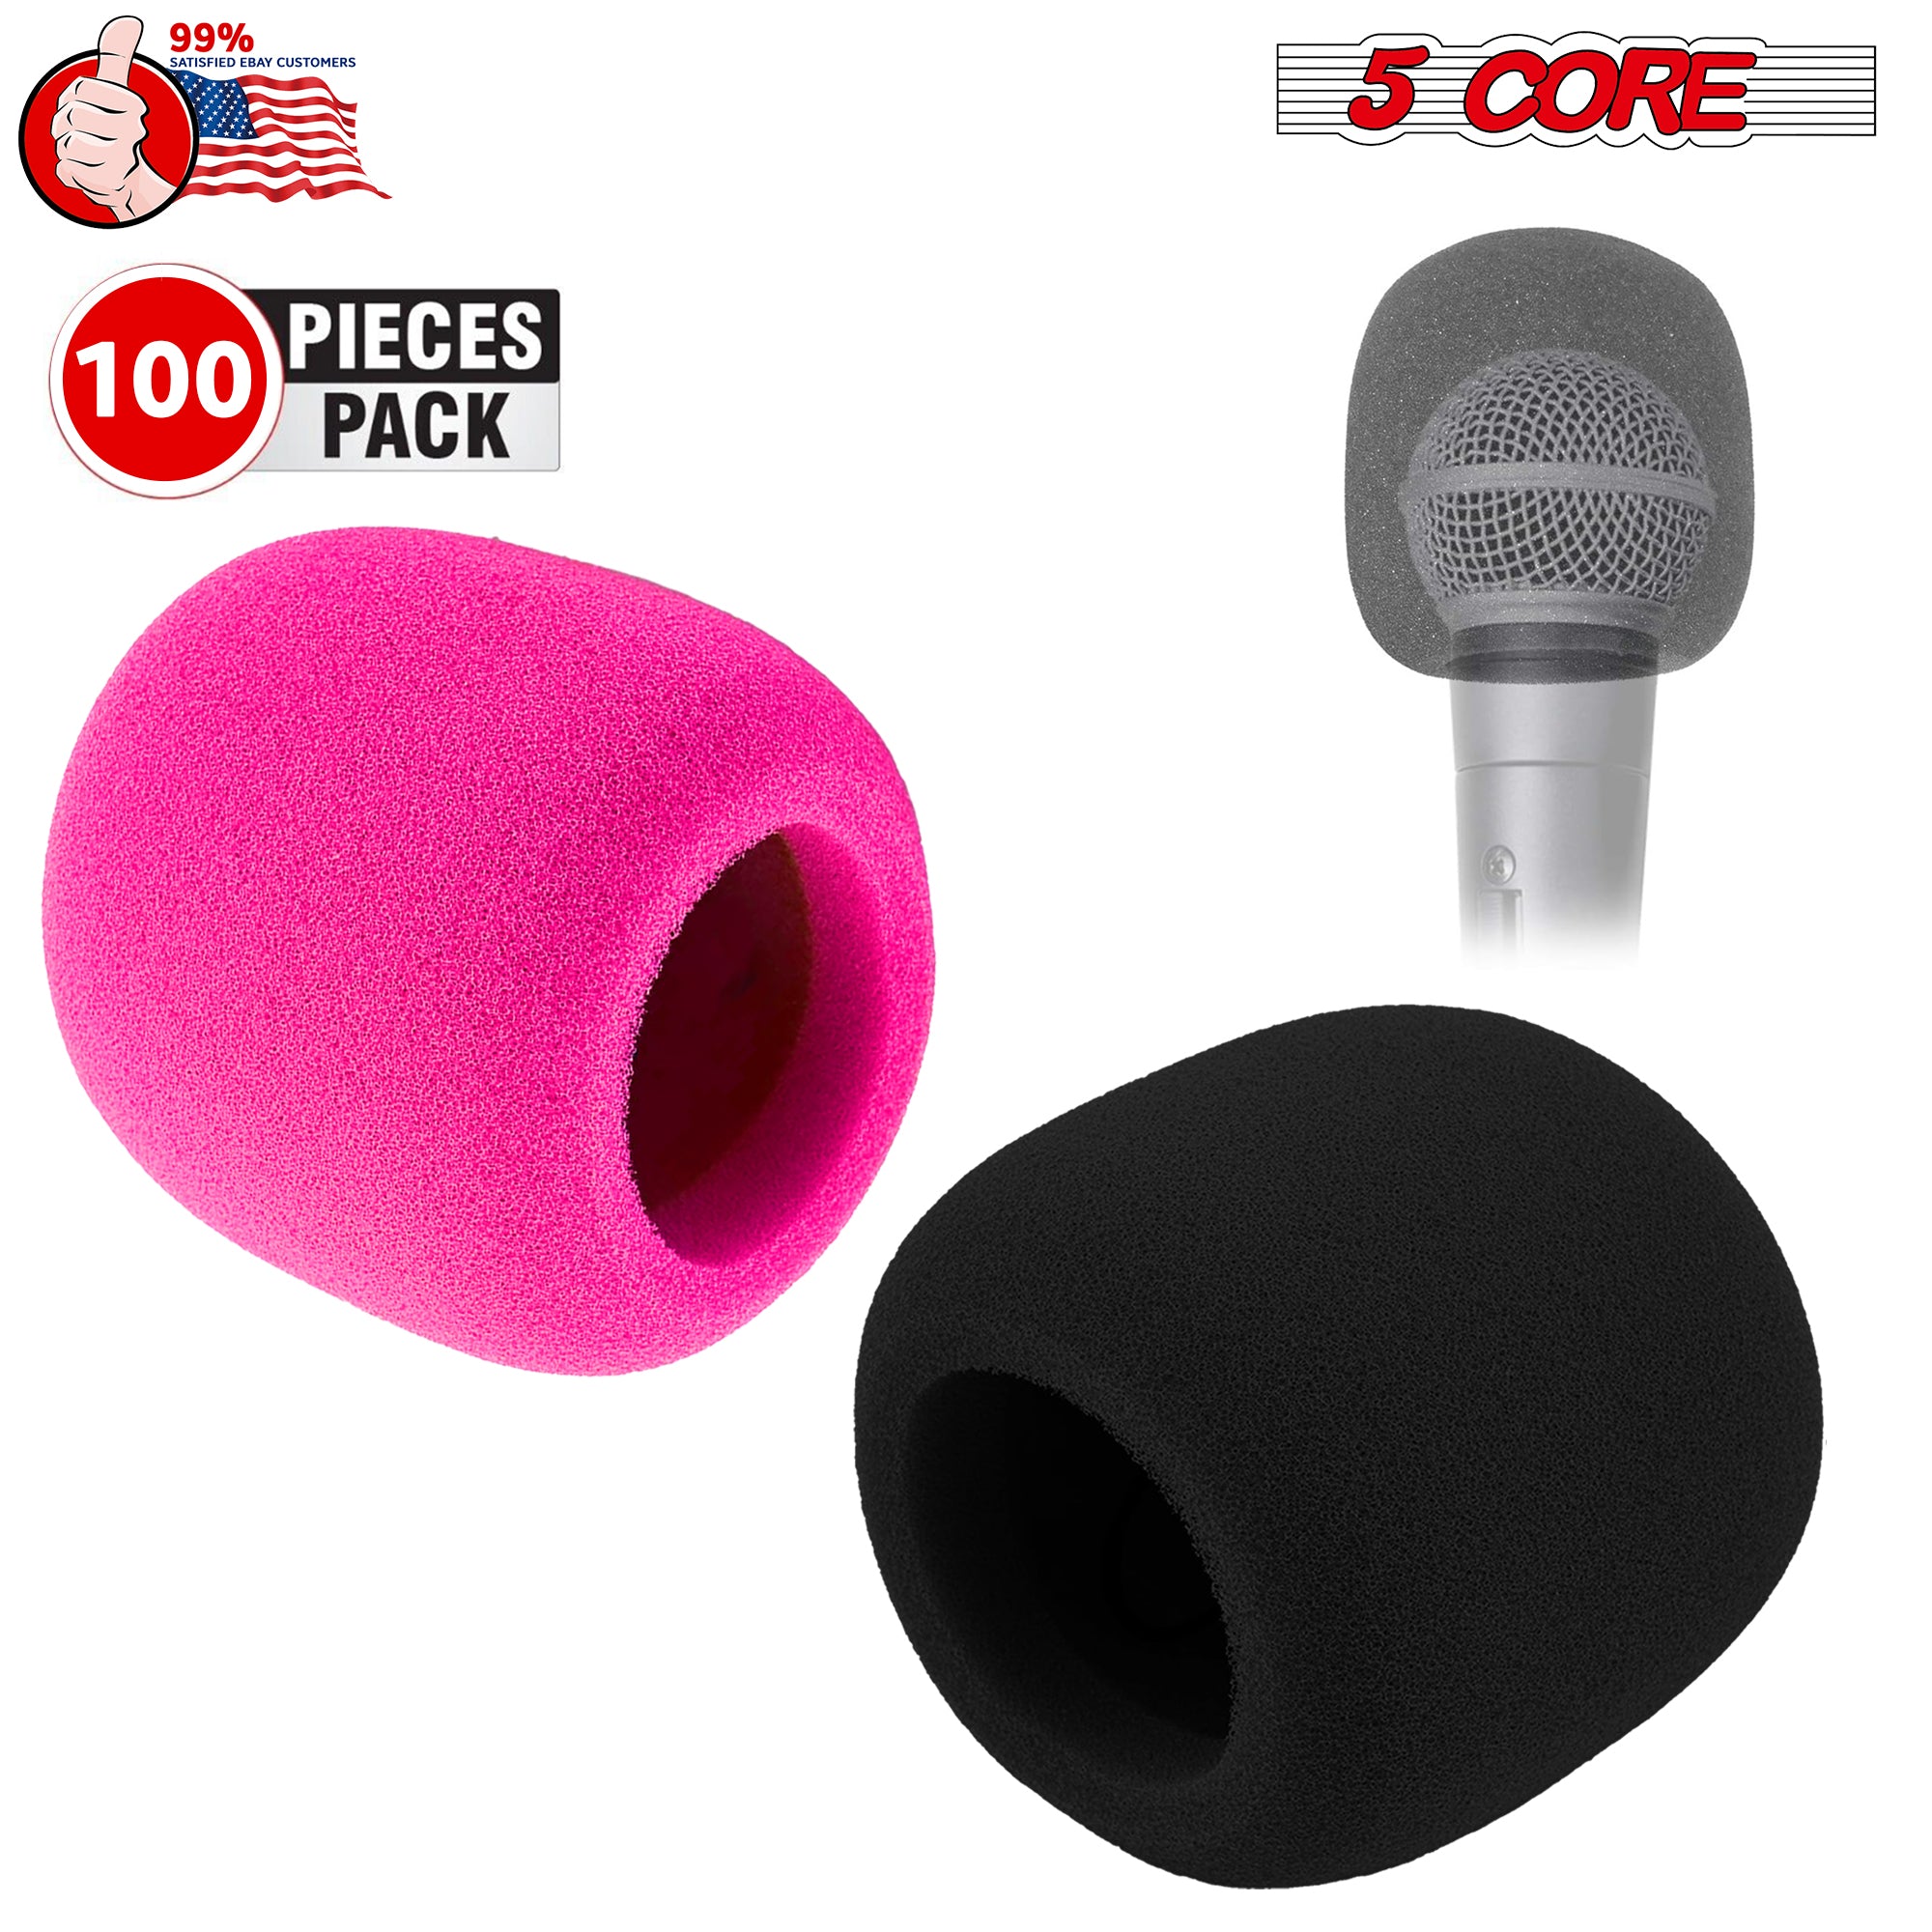 5Core Microphone Cover Professional Mic Soft Foam Windscreen Windproof Sponge for Mics 50Pack